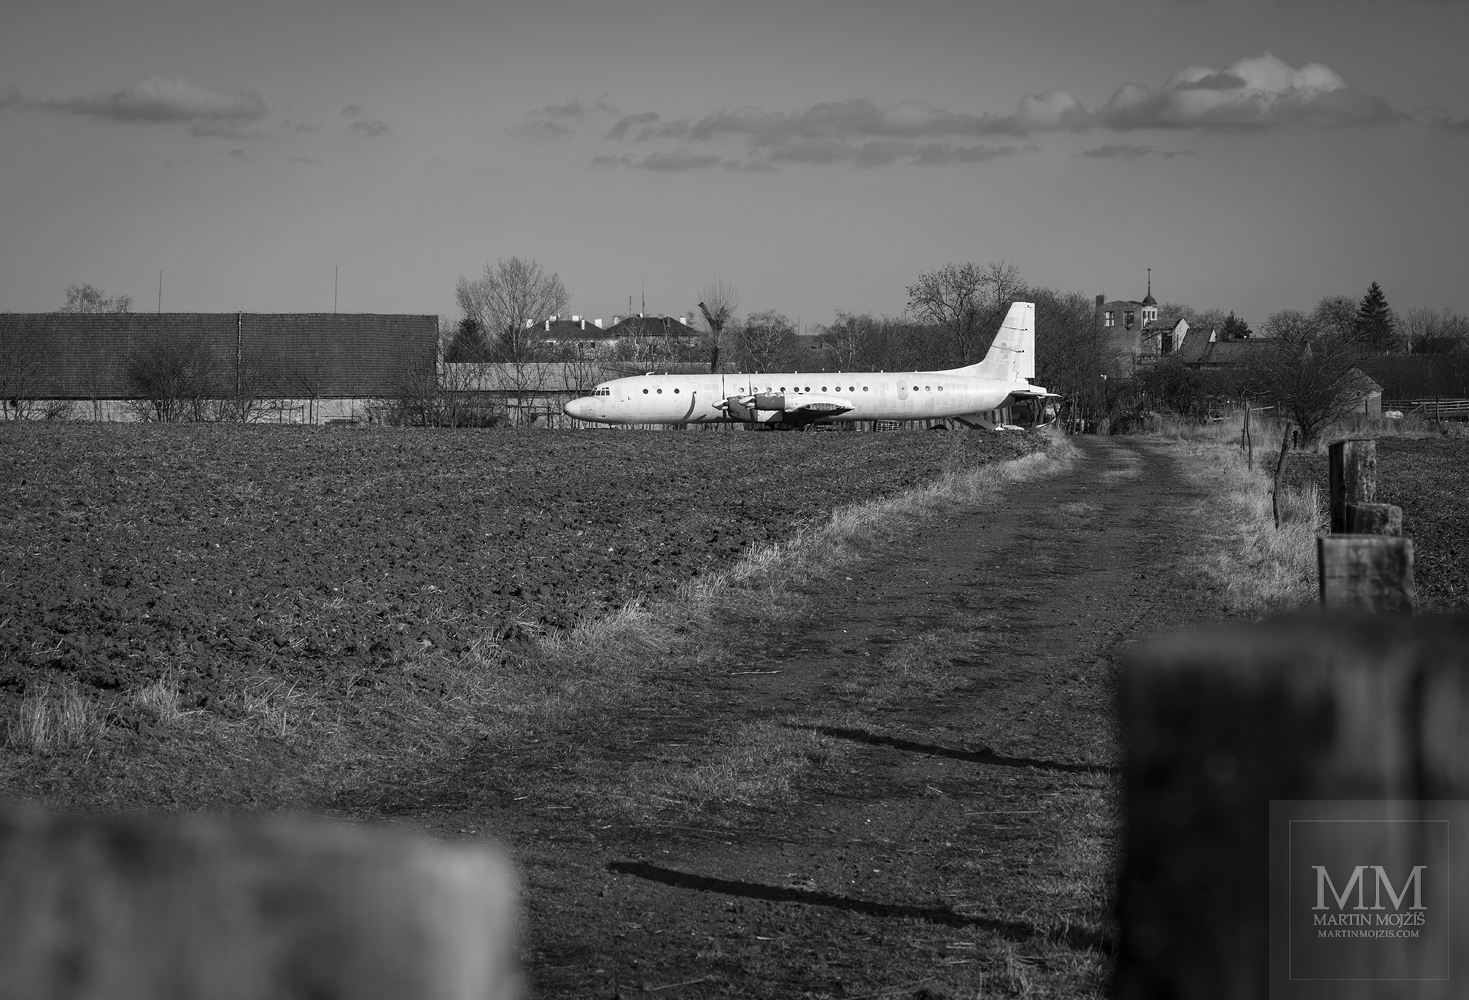 Velké bílé dopravní letadlo na poli u statku. Umělecká černobílá fotografie s názvem V POLOVINĚ ÚNORA. Fotograf Martin Mojžíš.